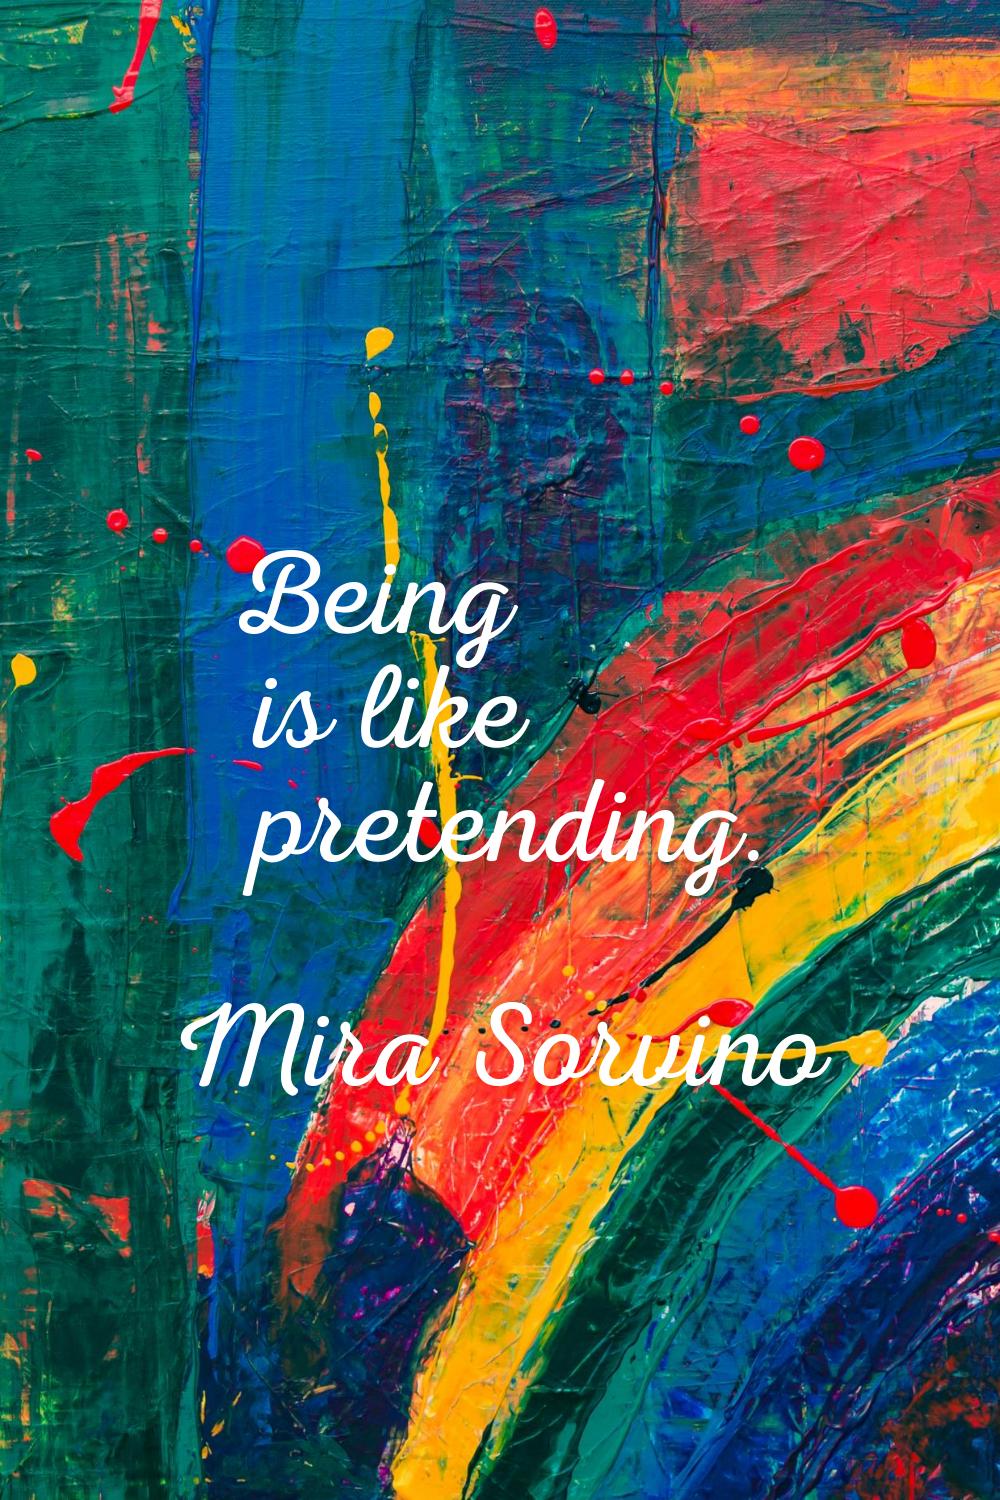 Being is like pretending.